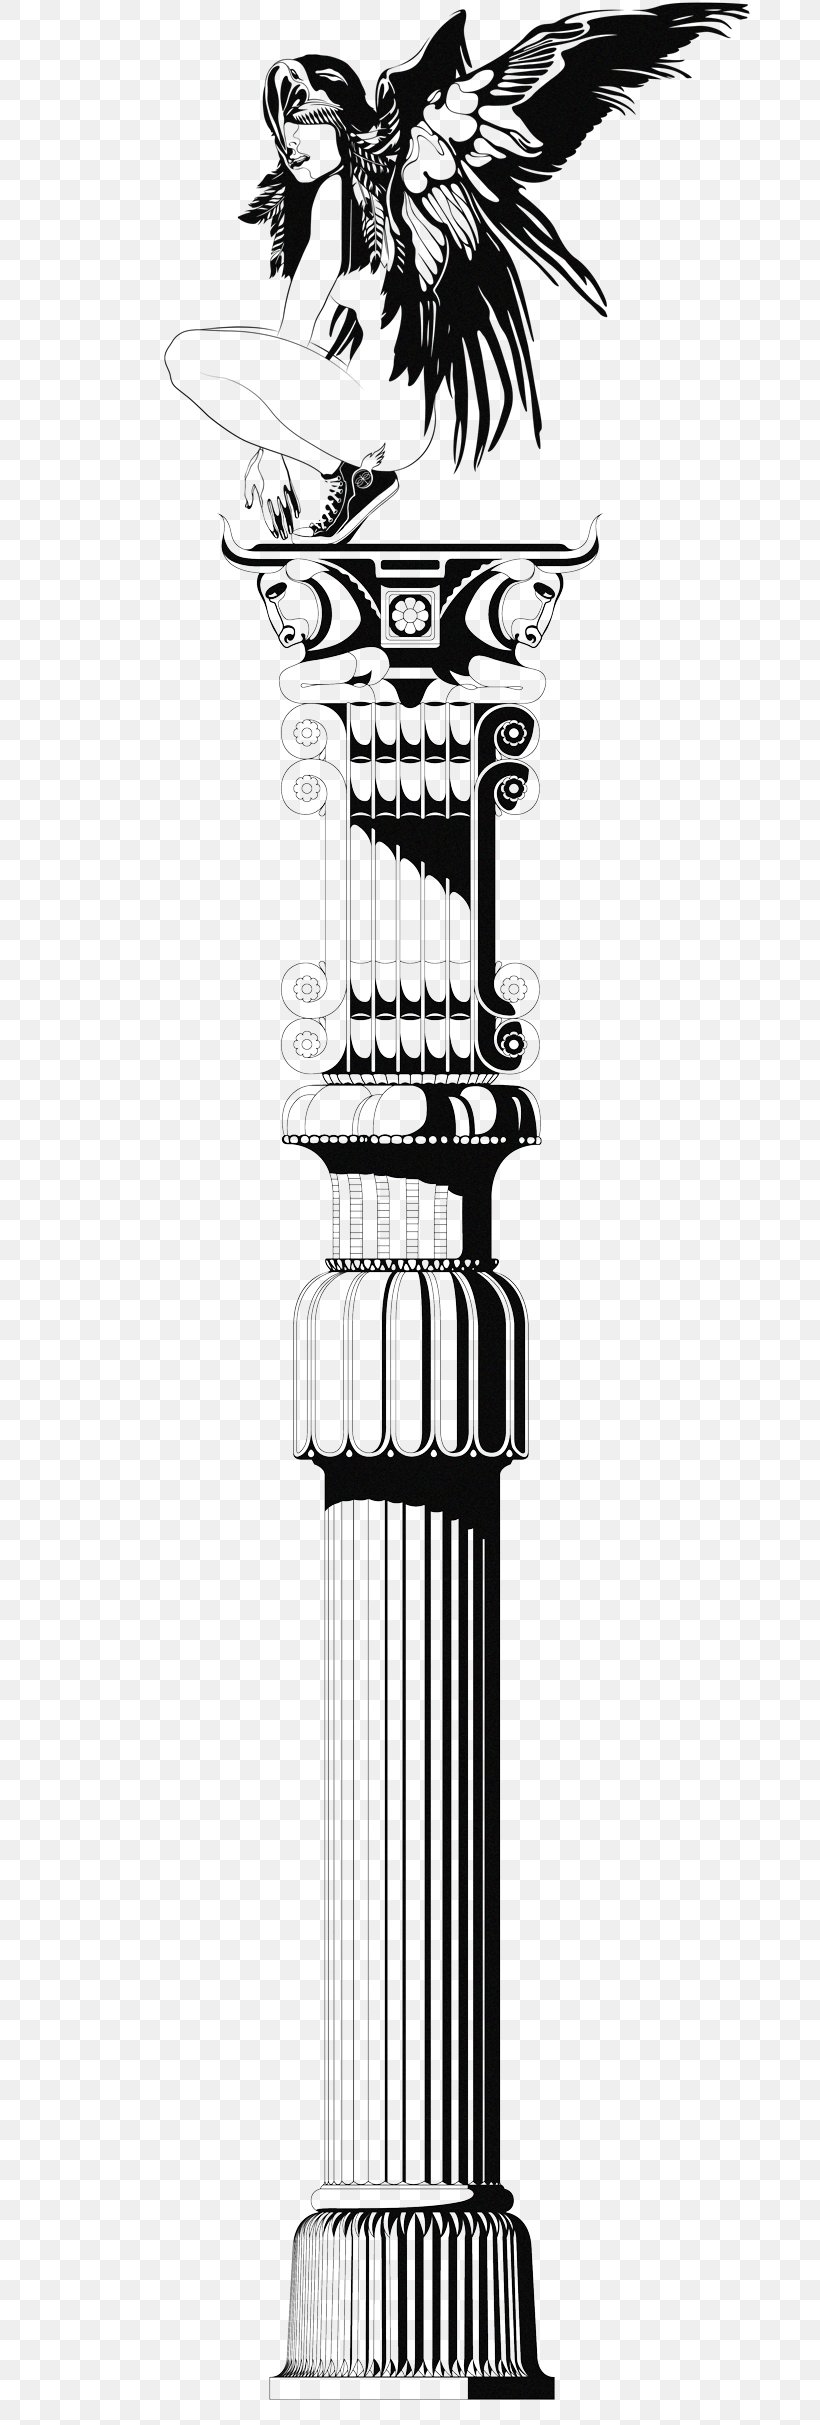 Column Portfoolio Black And White Persepolis Illustration, PNG, 700x2425px, Column, Black And White, Career Portfolio, Charisma, Contrast Download Free